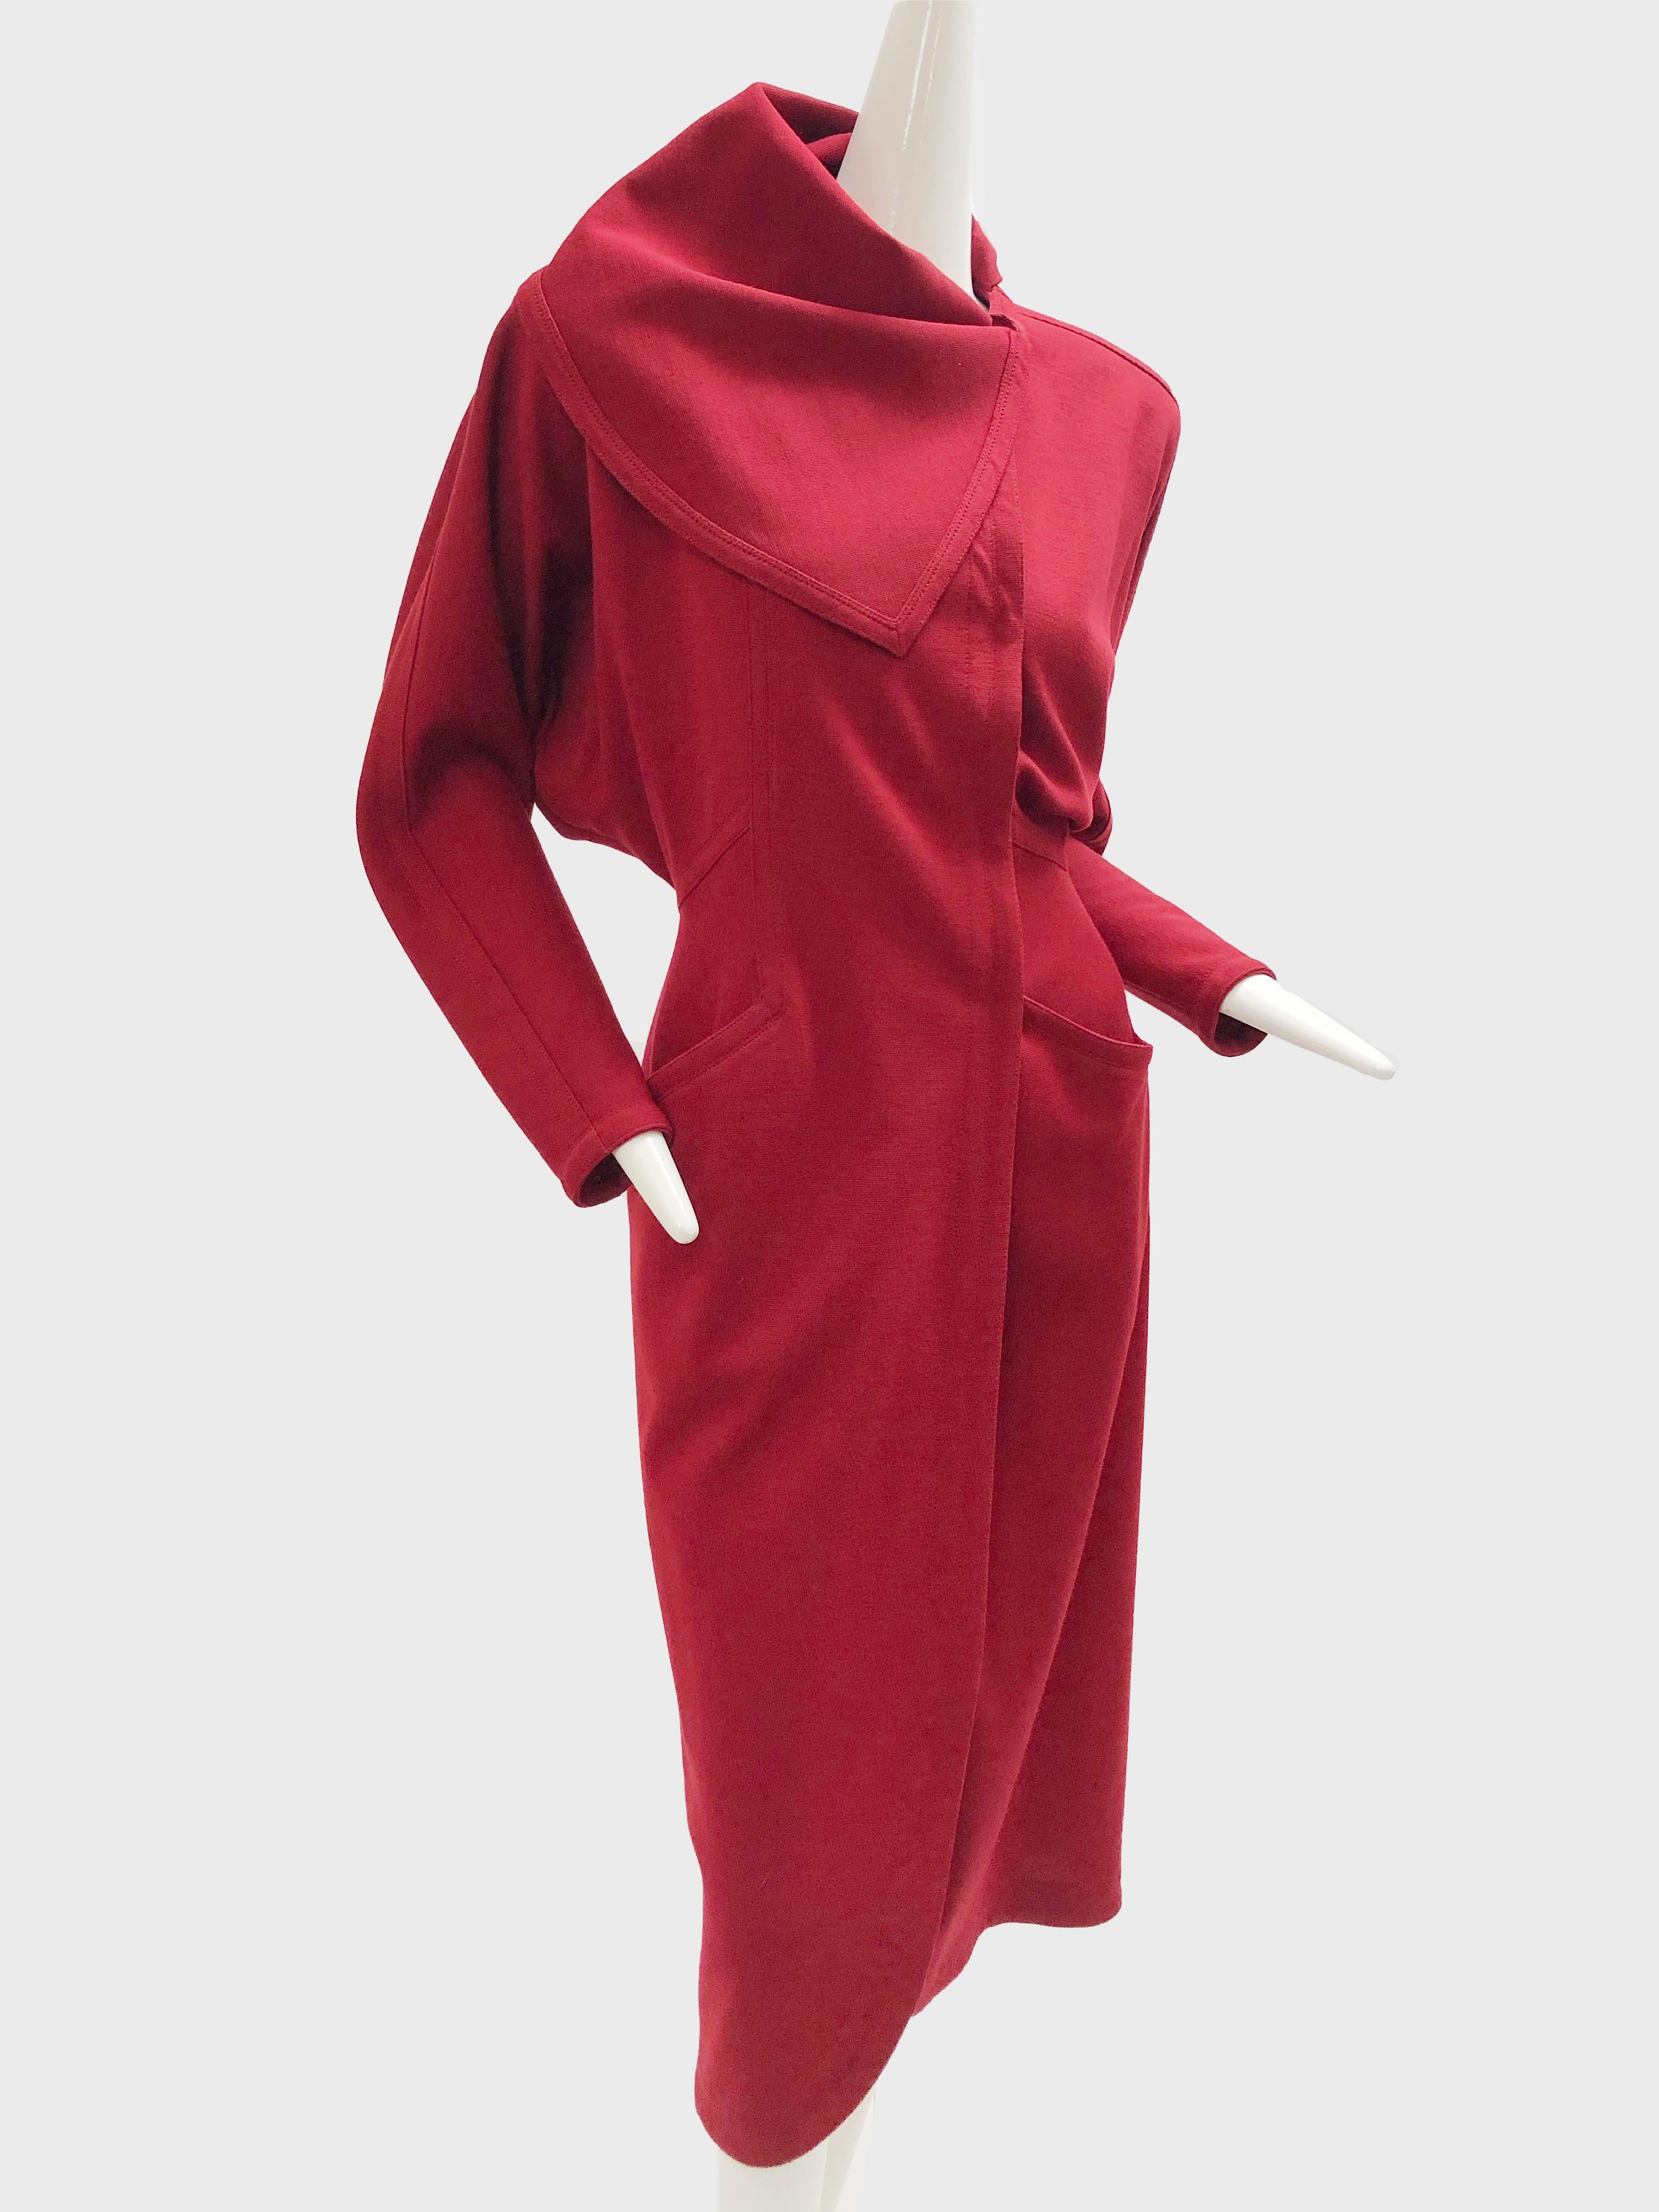 Ein wunderschönes Kleid aus rotem Wolljersey von Gianni Versace aus den 1980er Jahren im Wickel-Stil mit Dolman-Ärmeln, verdeckten Knöpfen vorne und einem angebrachten Foulard. Passt ungefähr der US-Größe 0-4.